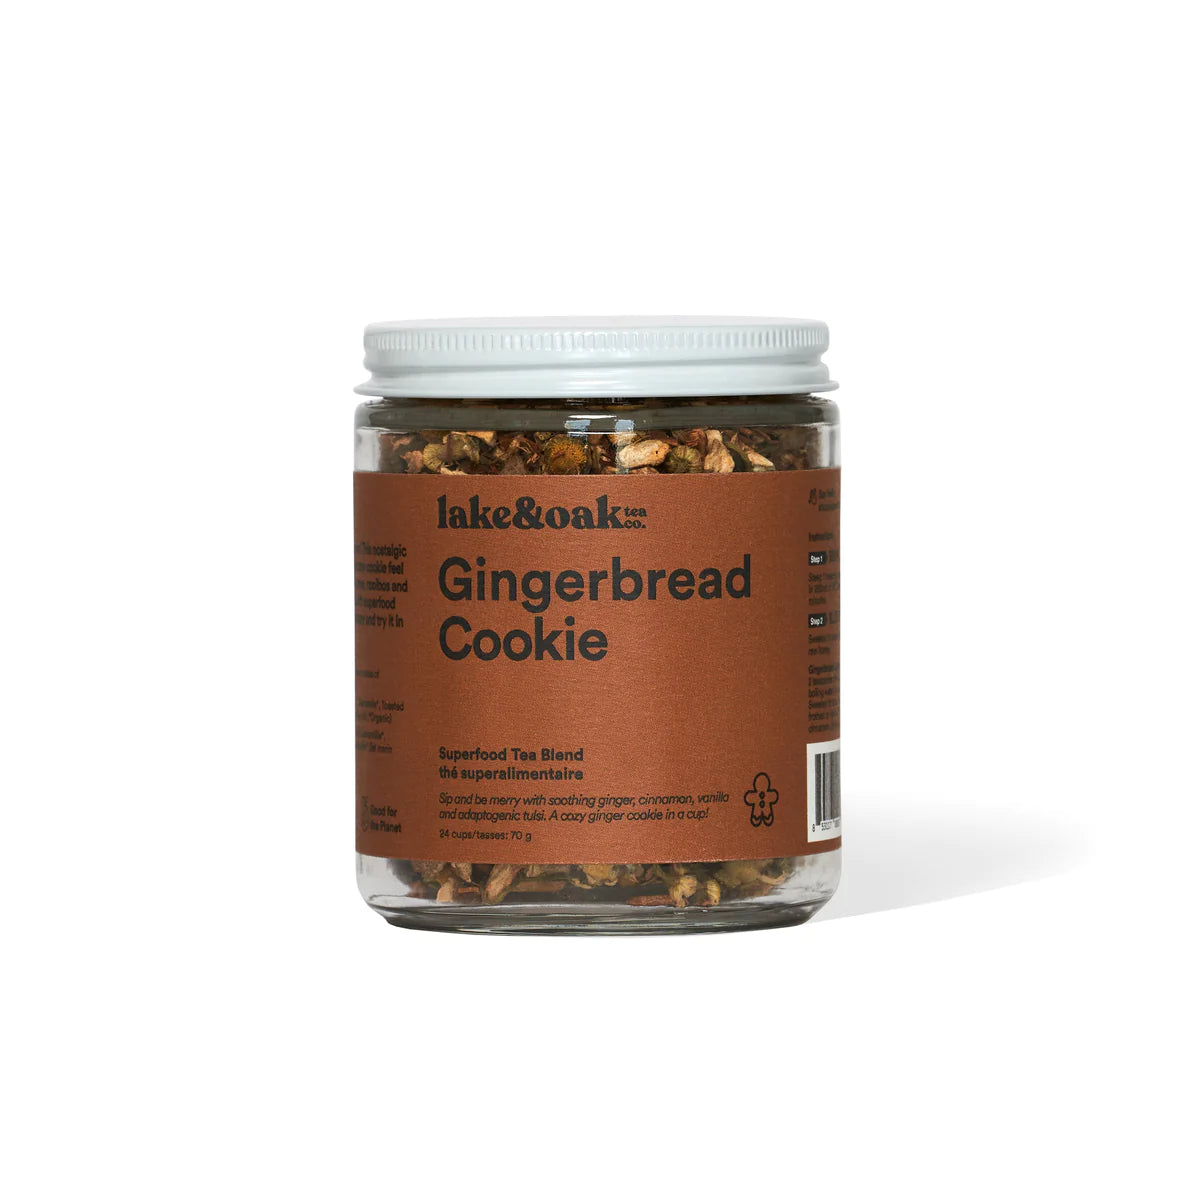 Gingerbread Cookie - Loose Leaf Tea - 24 Cups